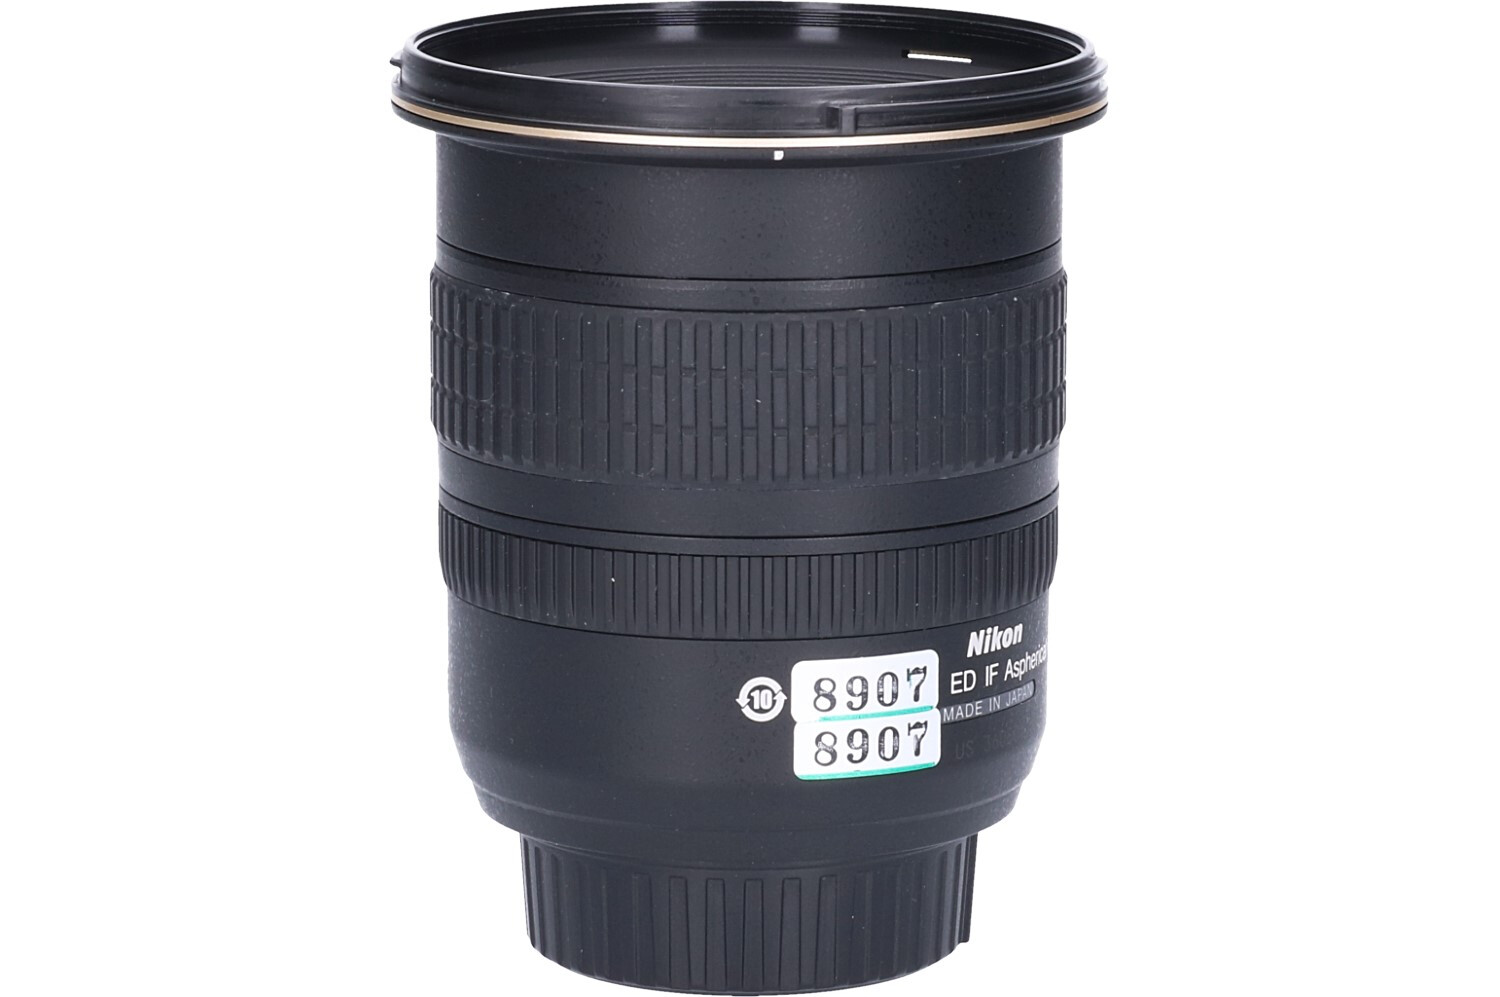 Tweedehands Nikon AF-S 12-24mm f/4.0G IF ED DX CM8907